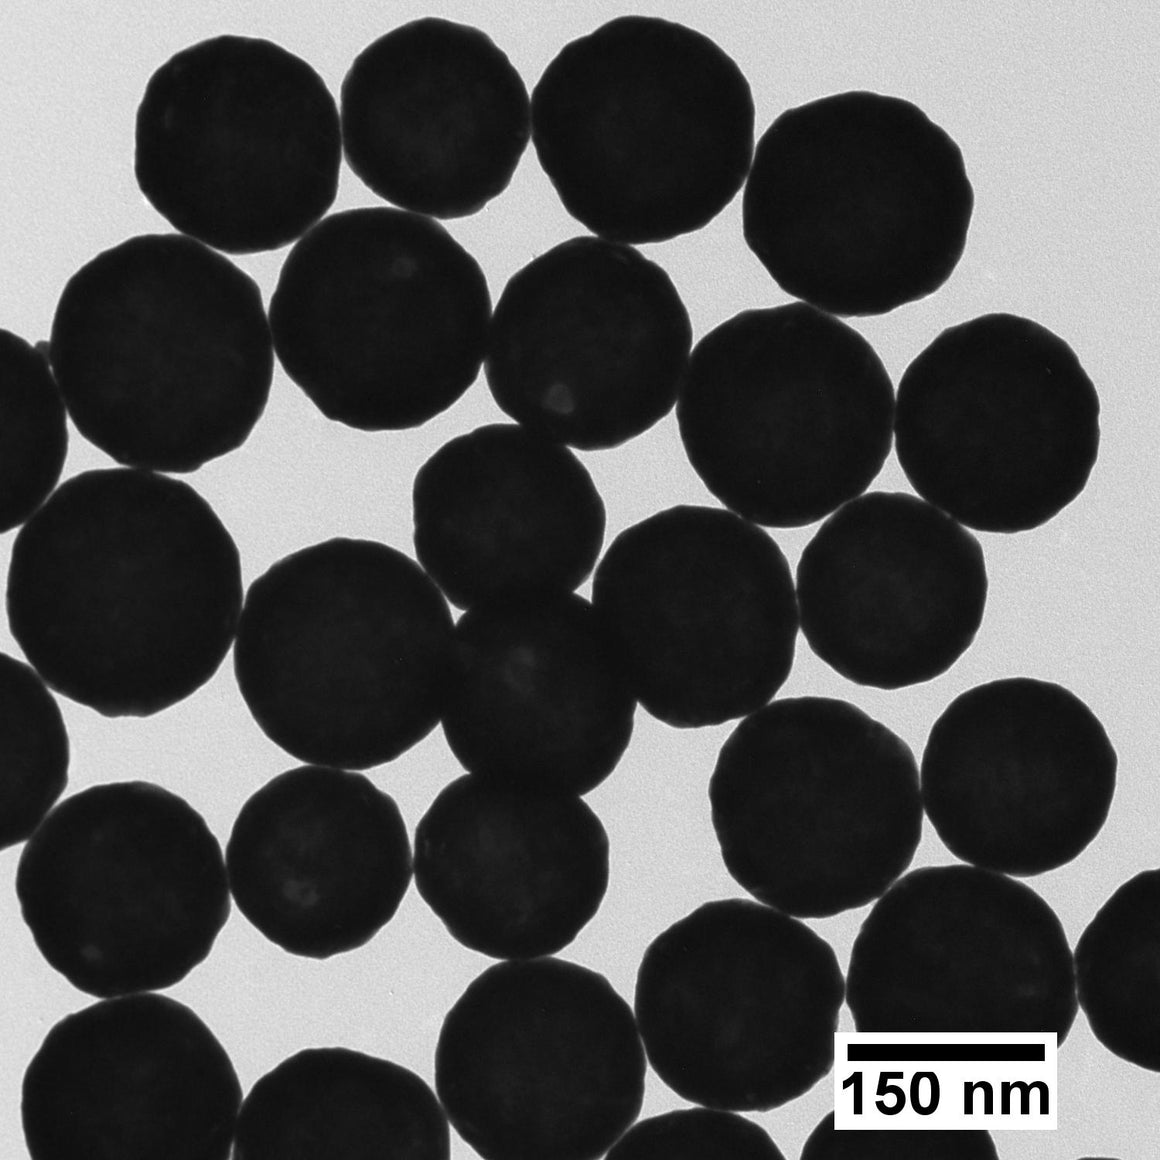 BioReady Gold Nanoshells – Citrate